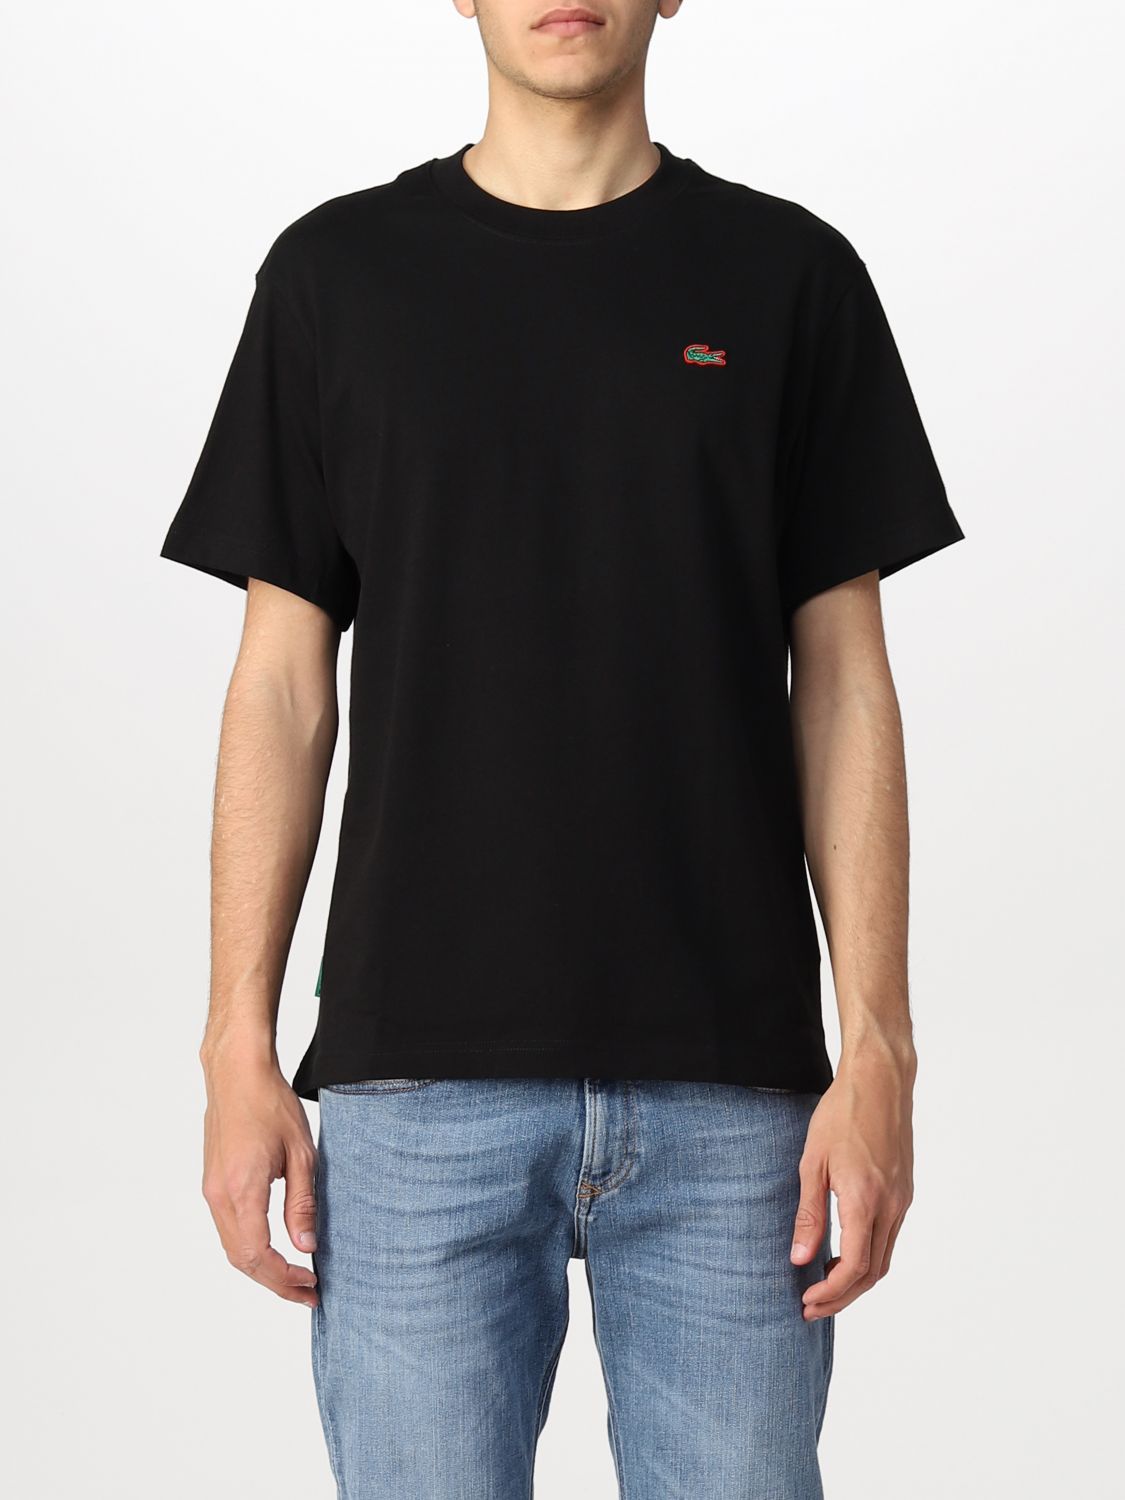 T-shirt Lacoste L!Ve: Lacoste L! Ve t-shirt in cotton with logo black 1